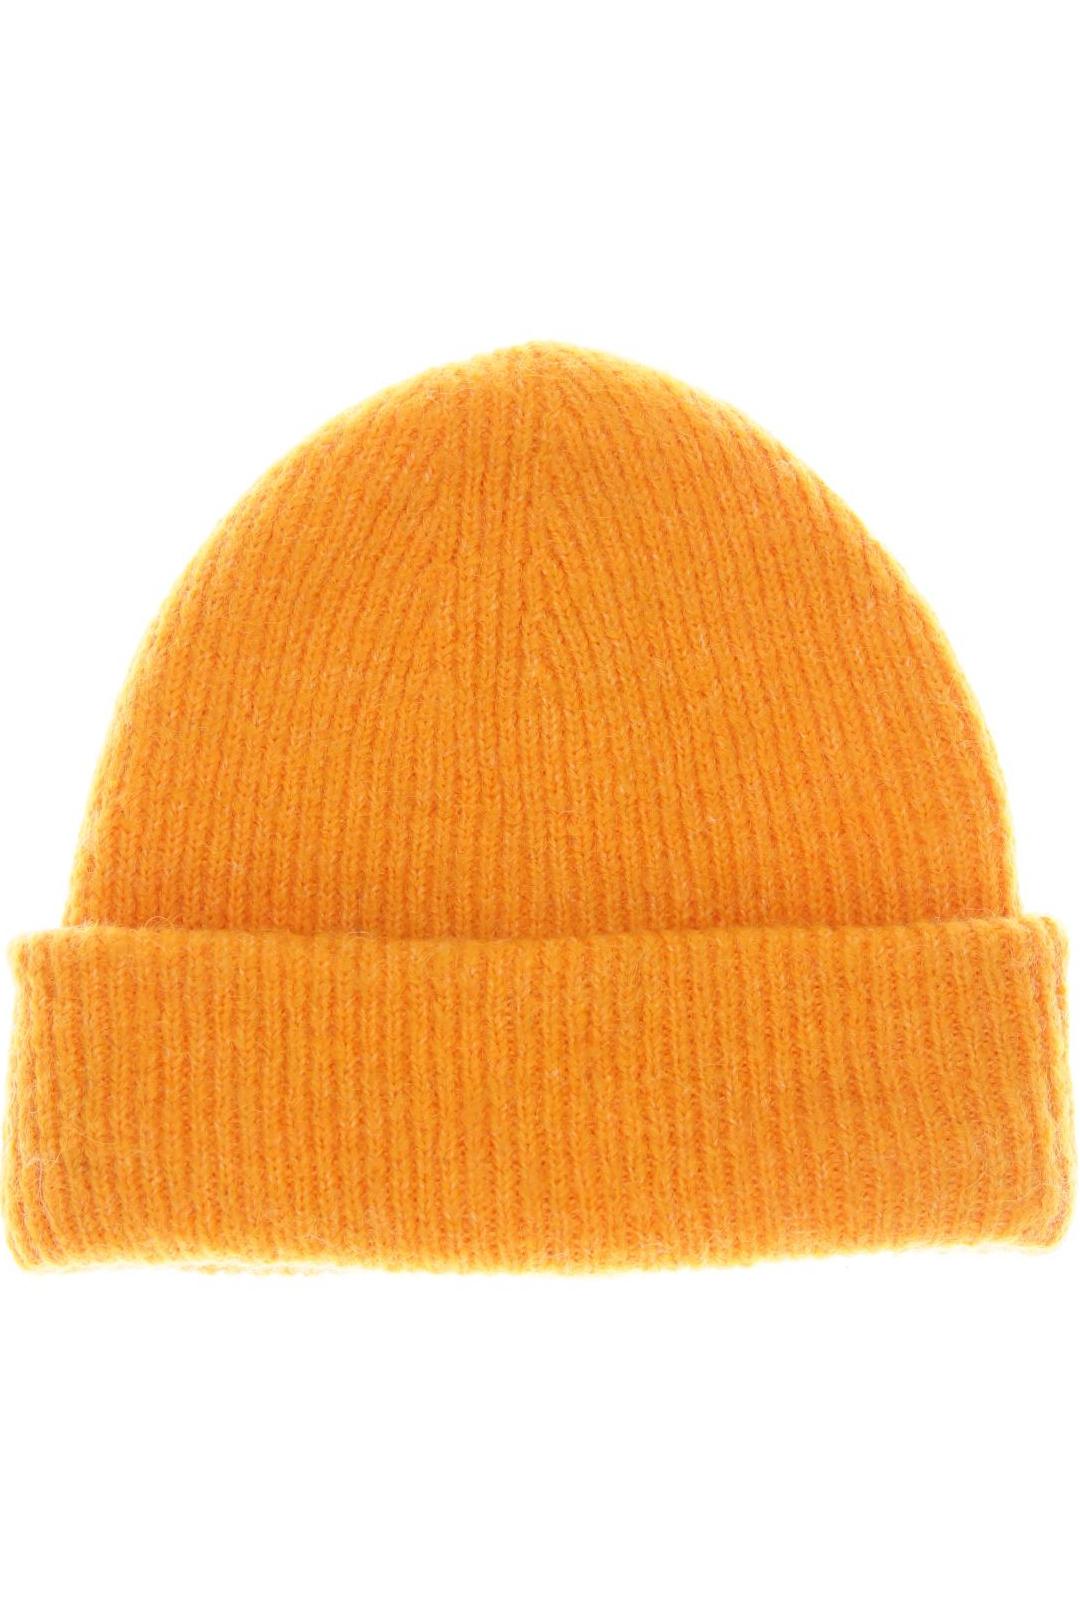 ZARA Damen Hut/Mütze, orange von ZARA